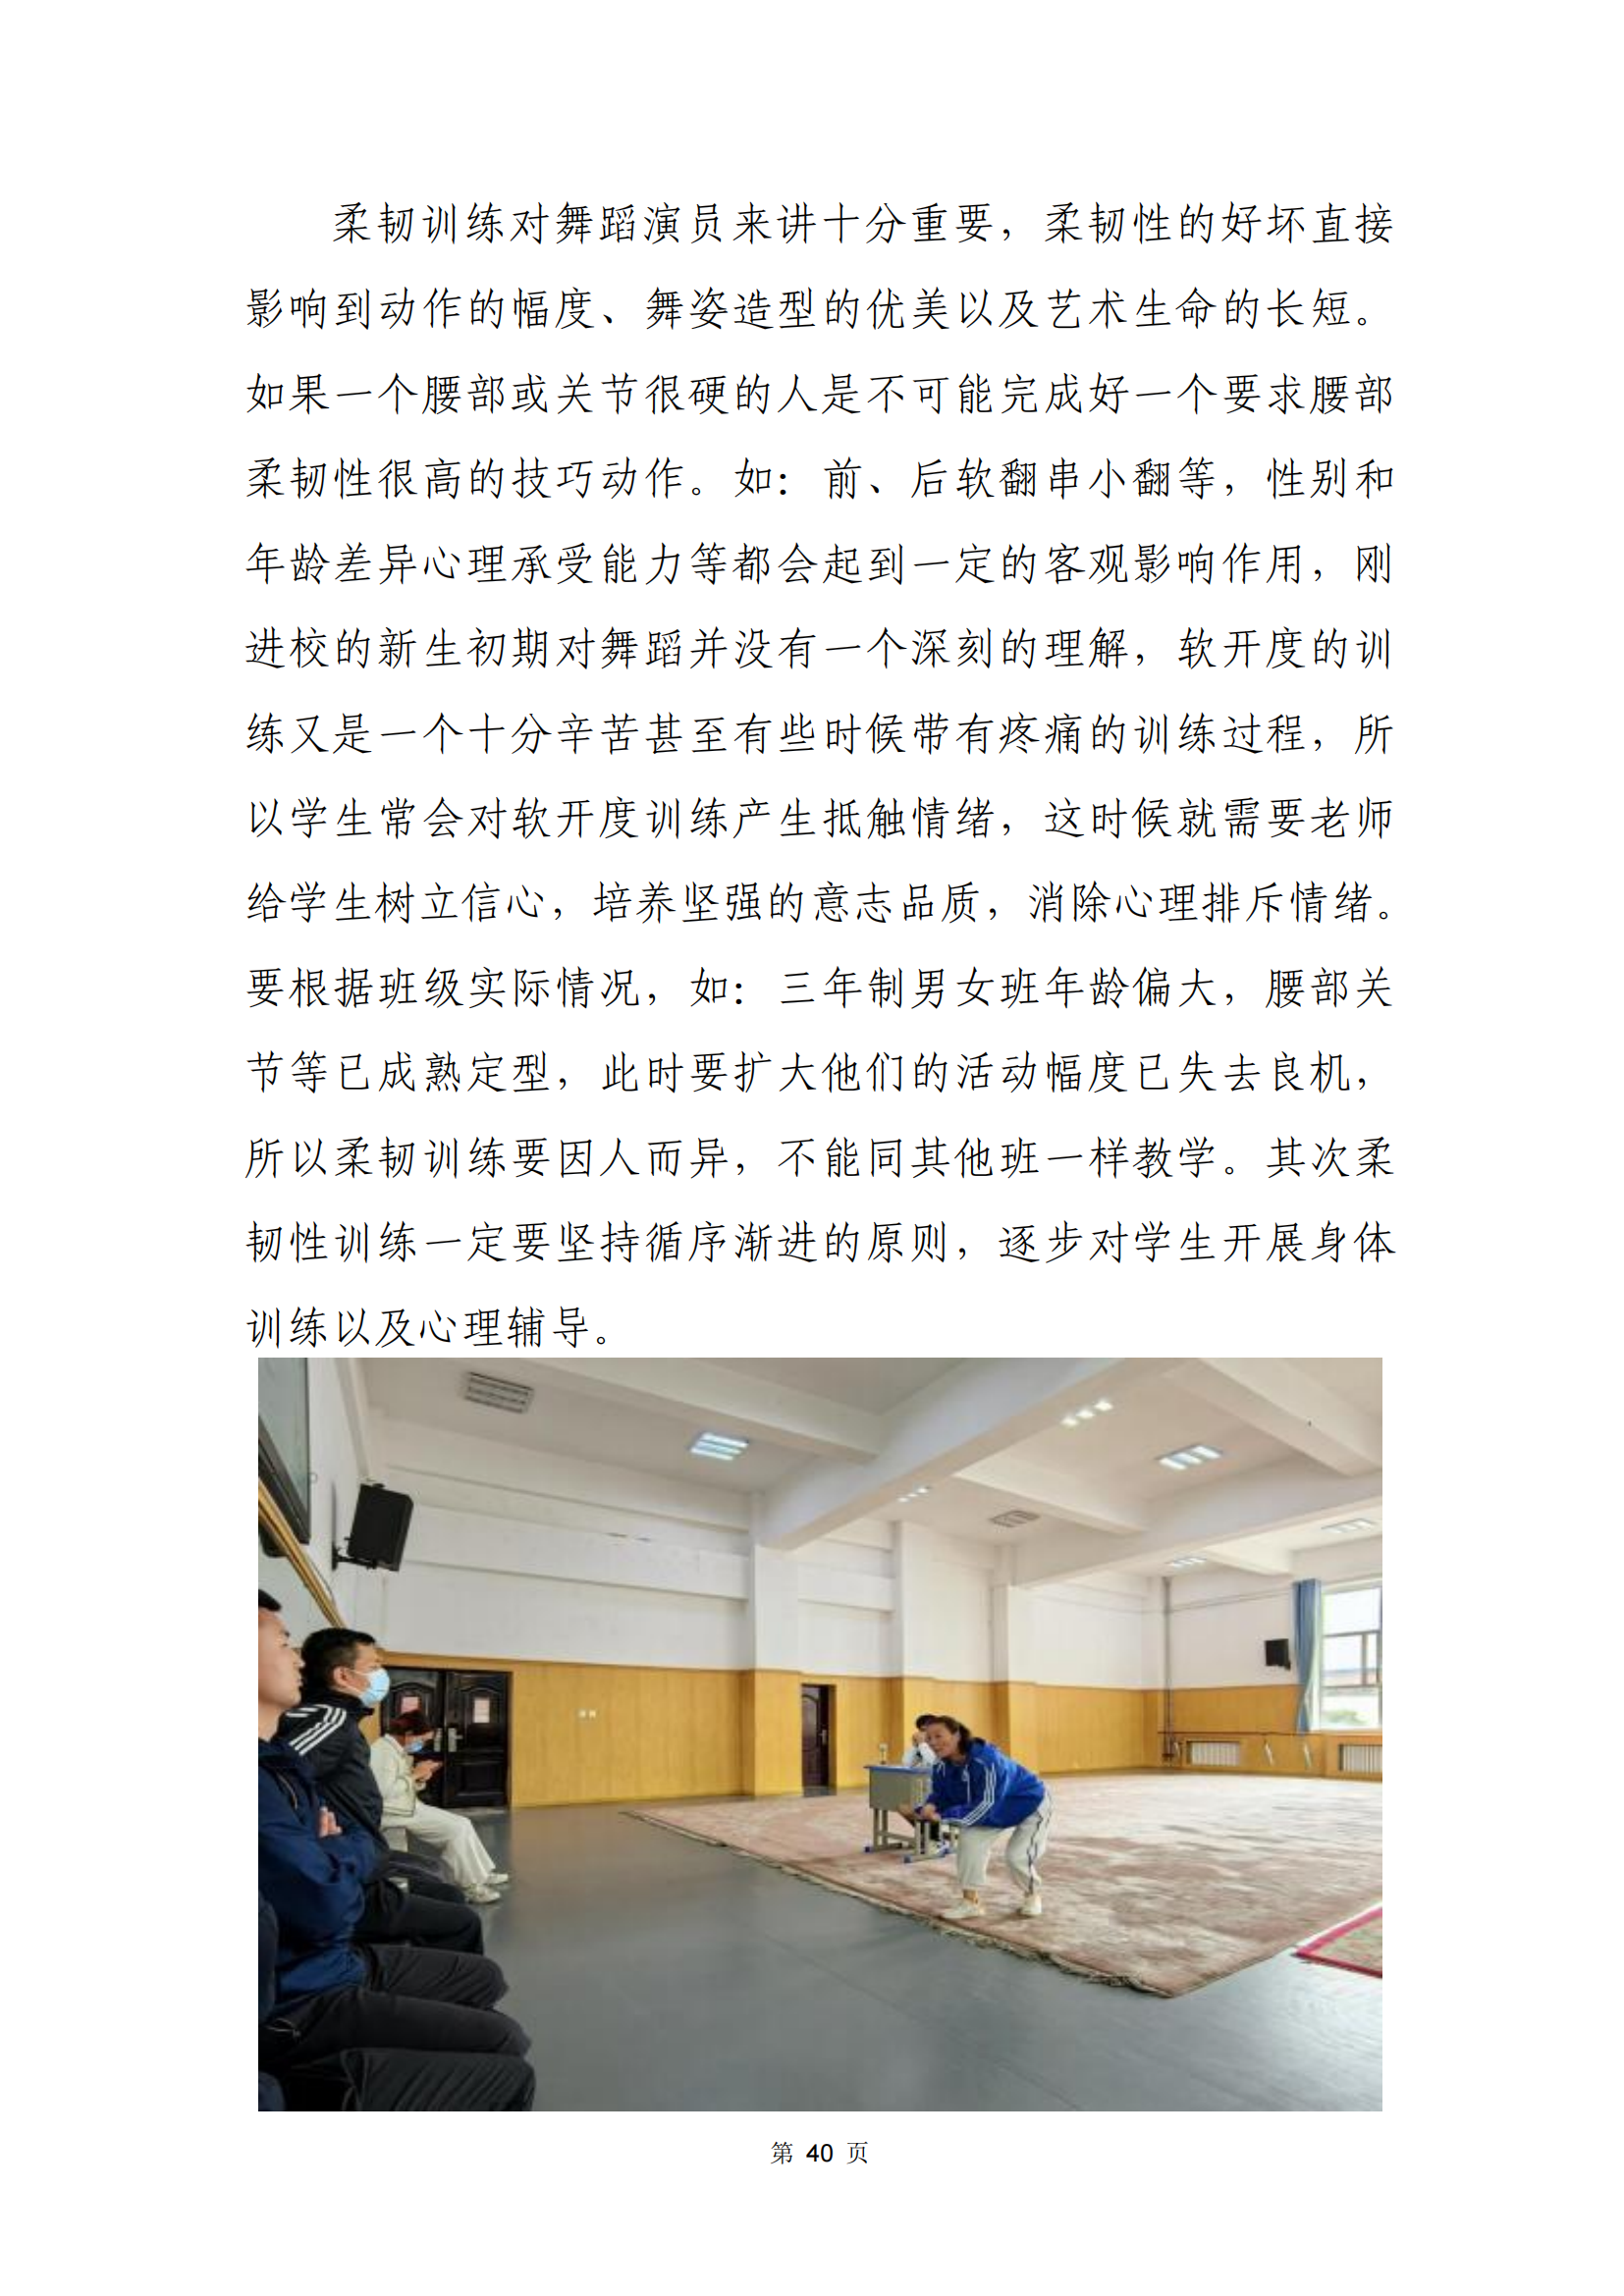 青海省文化艺术职业学校教育质量年报_47.png